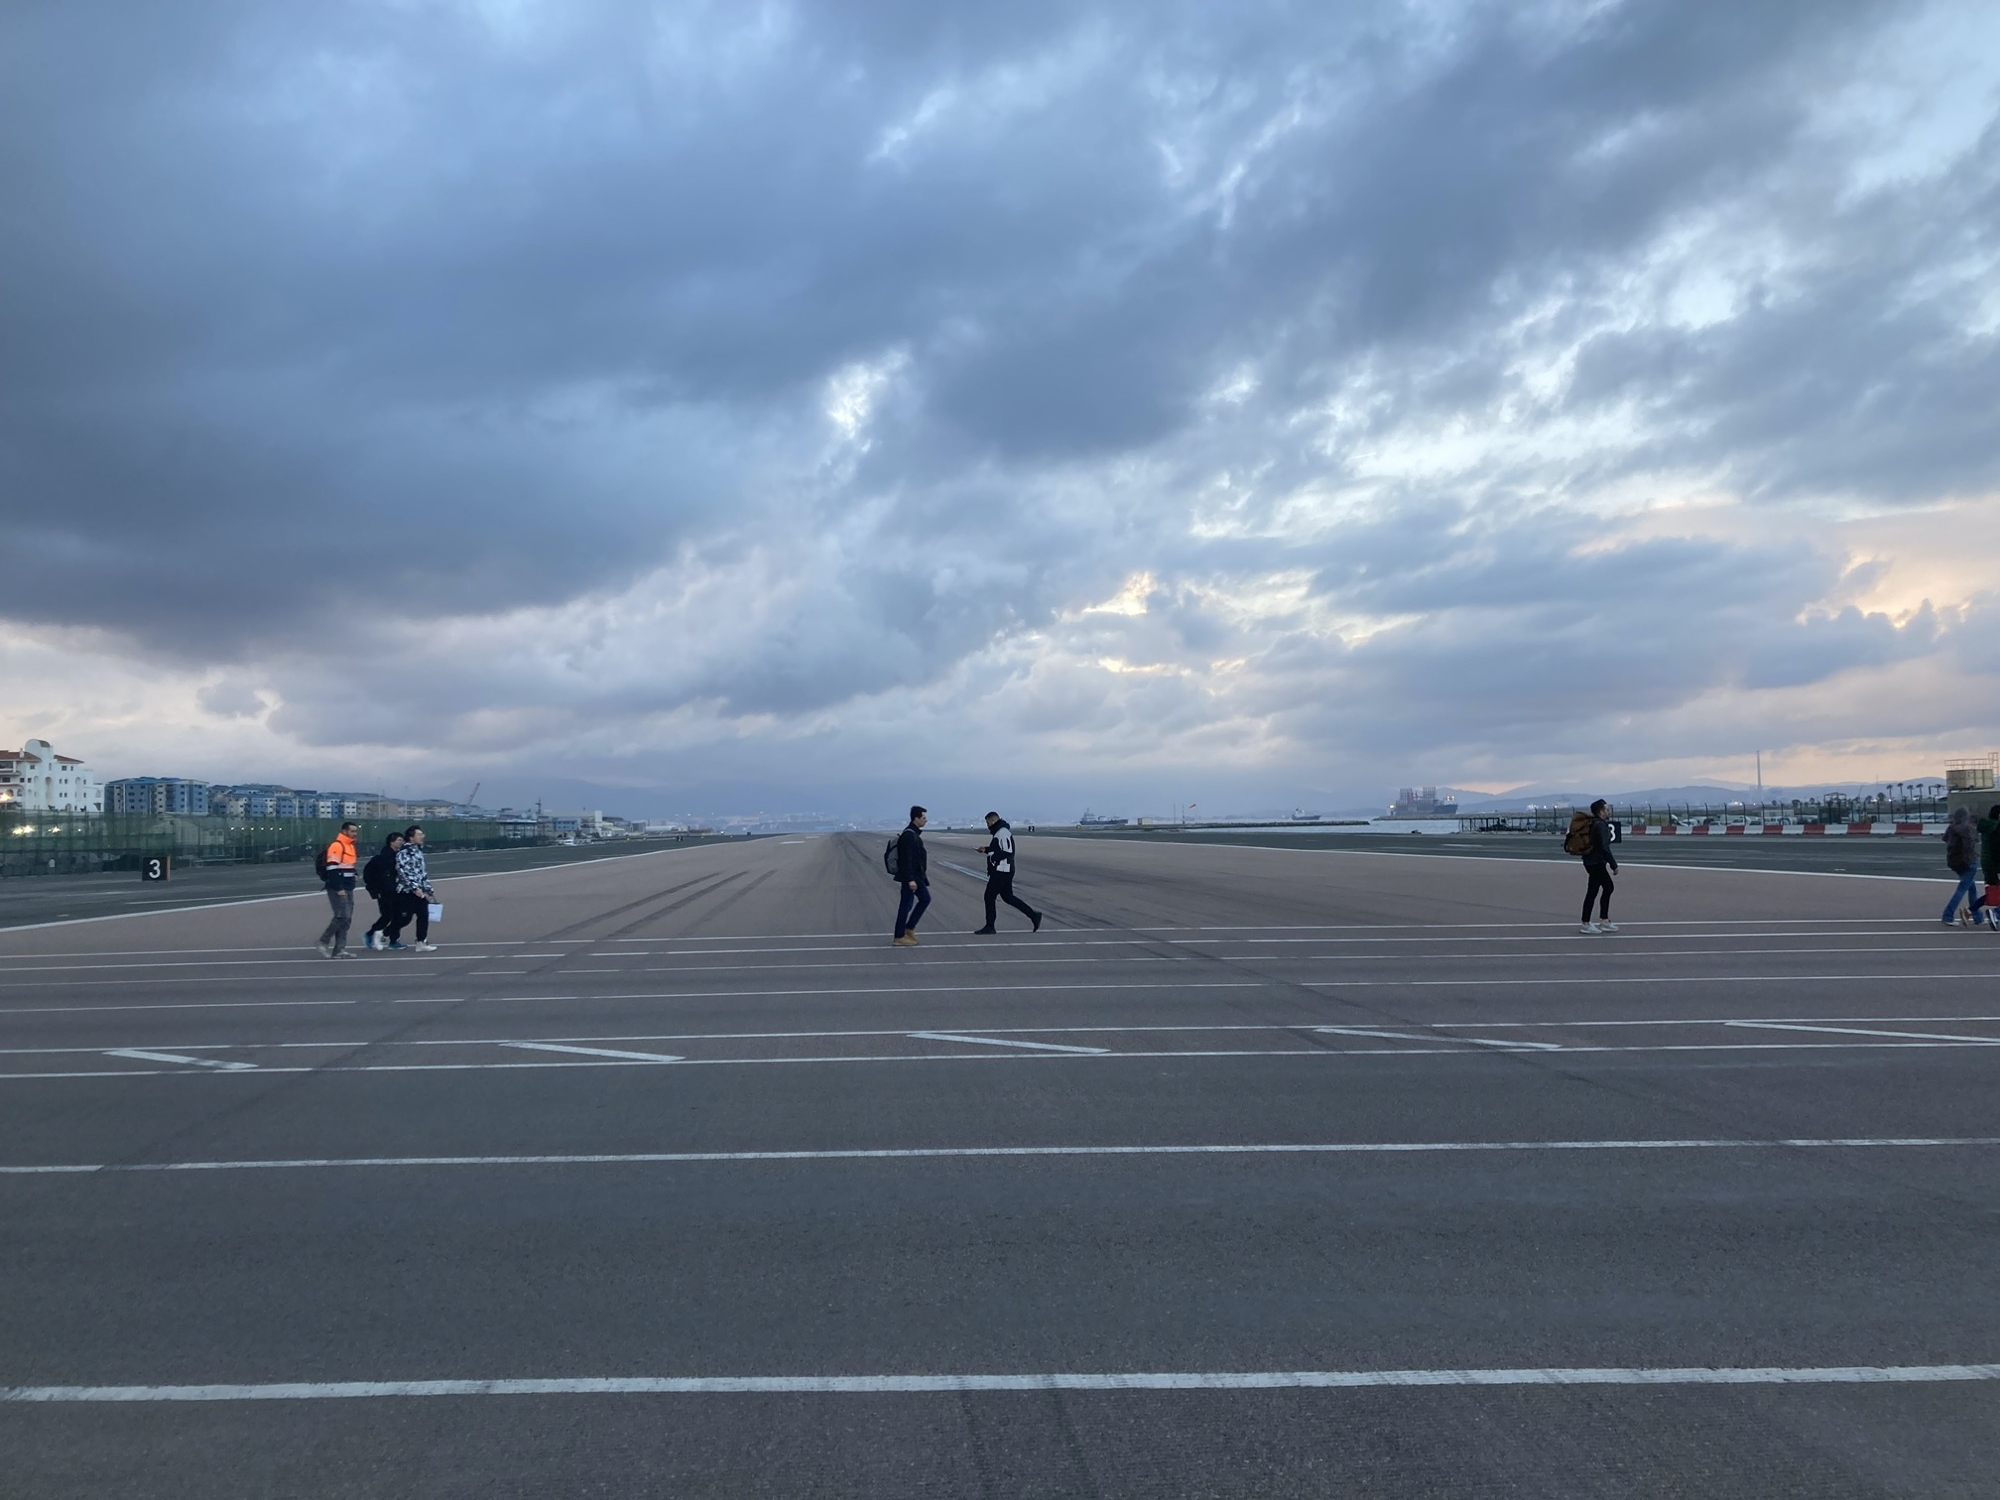 Blick vom Gehweg auf das Flugfeld des Flughafens Gibraltar, auf dem Fußweg auf der anderen Seite der Straße sind mehrere Personen zu sehen, die in unterschiedliche Richtungen das Flugfeld überqueren. Die Dämmerung hat bereits eingesetzt, die Wolkendecke hat eine deutlich bläuliche Färbung angenommen